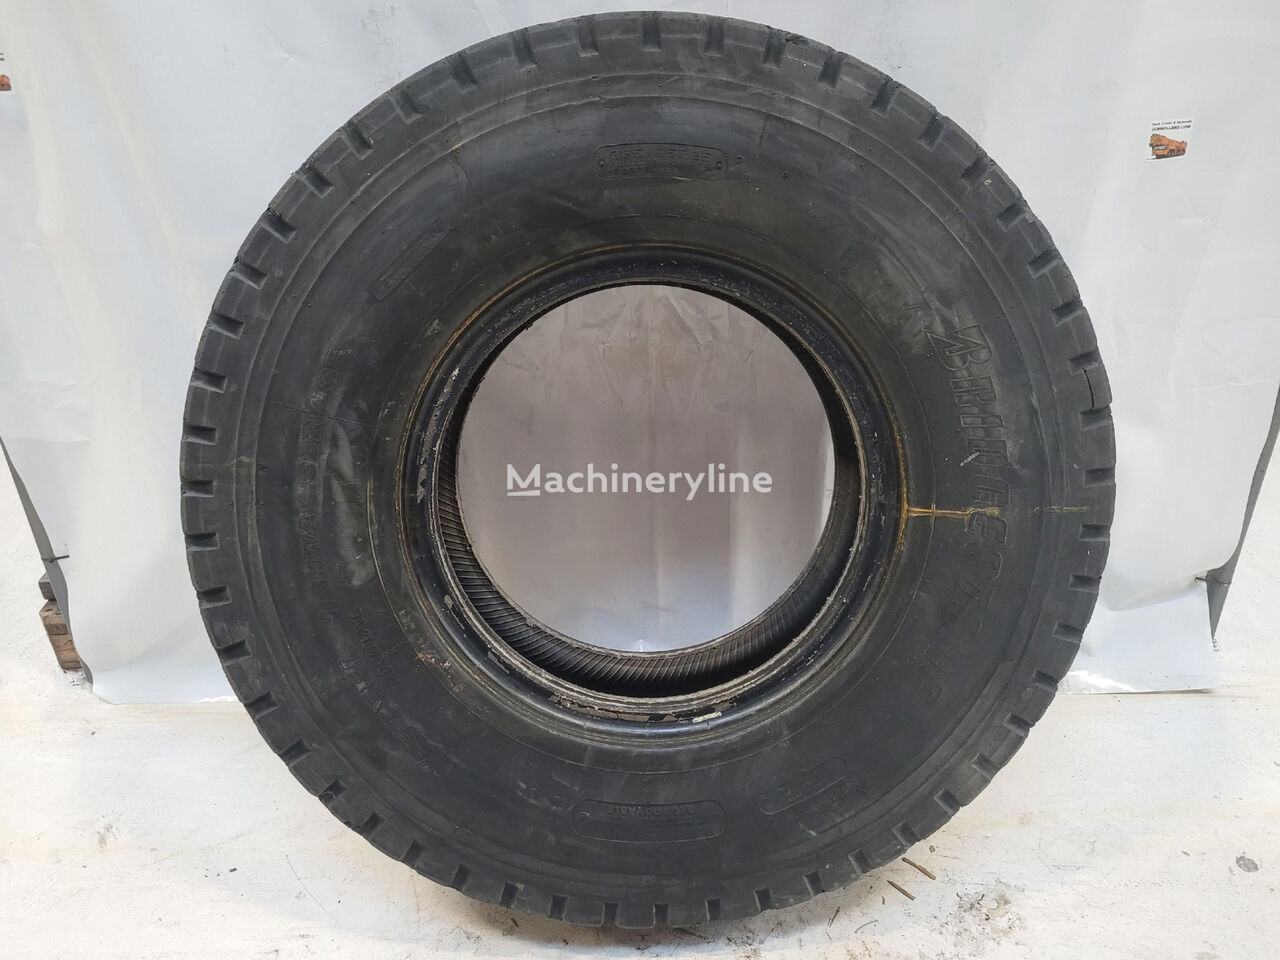 Bridgestone Wheel 14:00 R25 crane tire